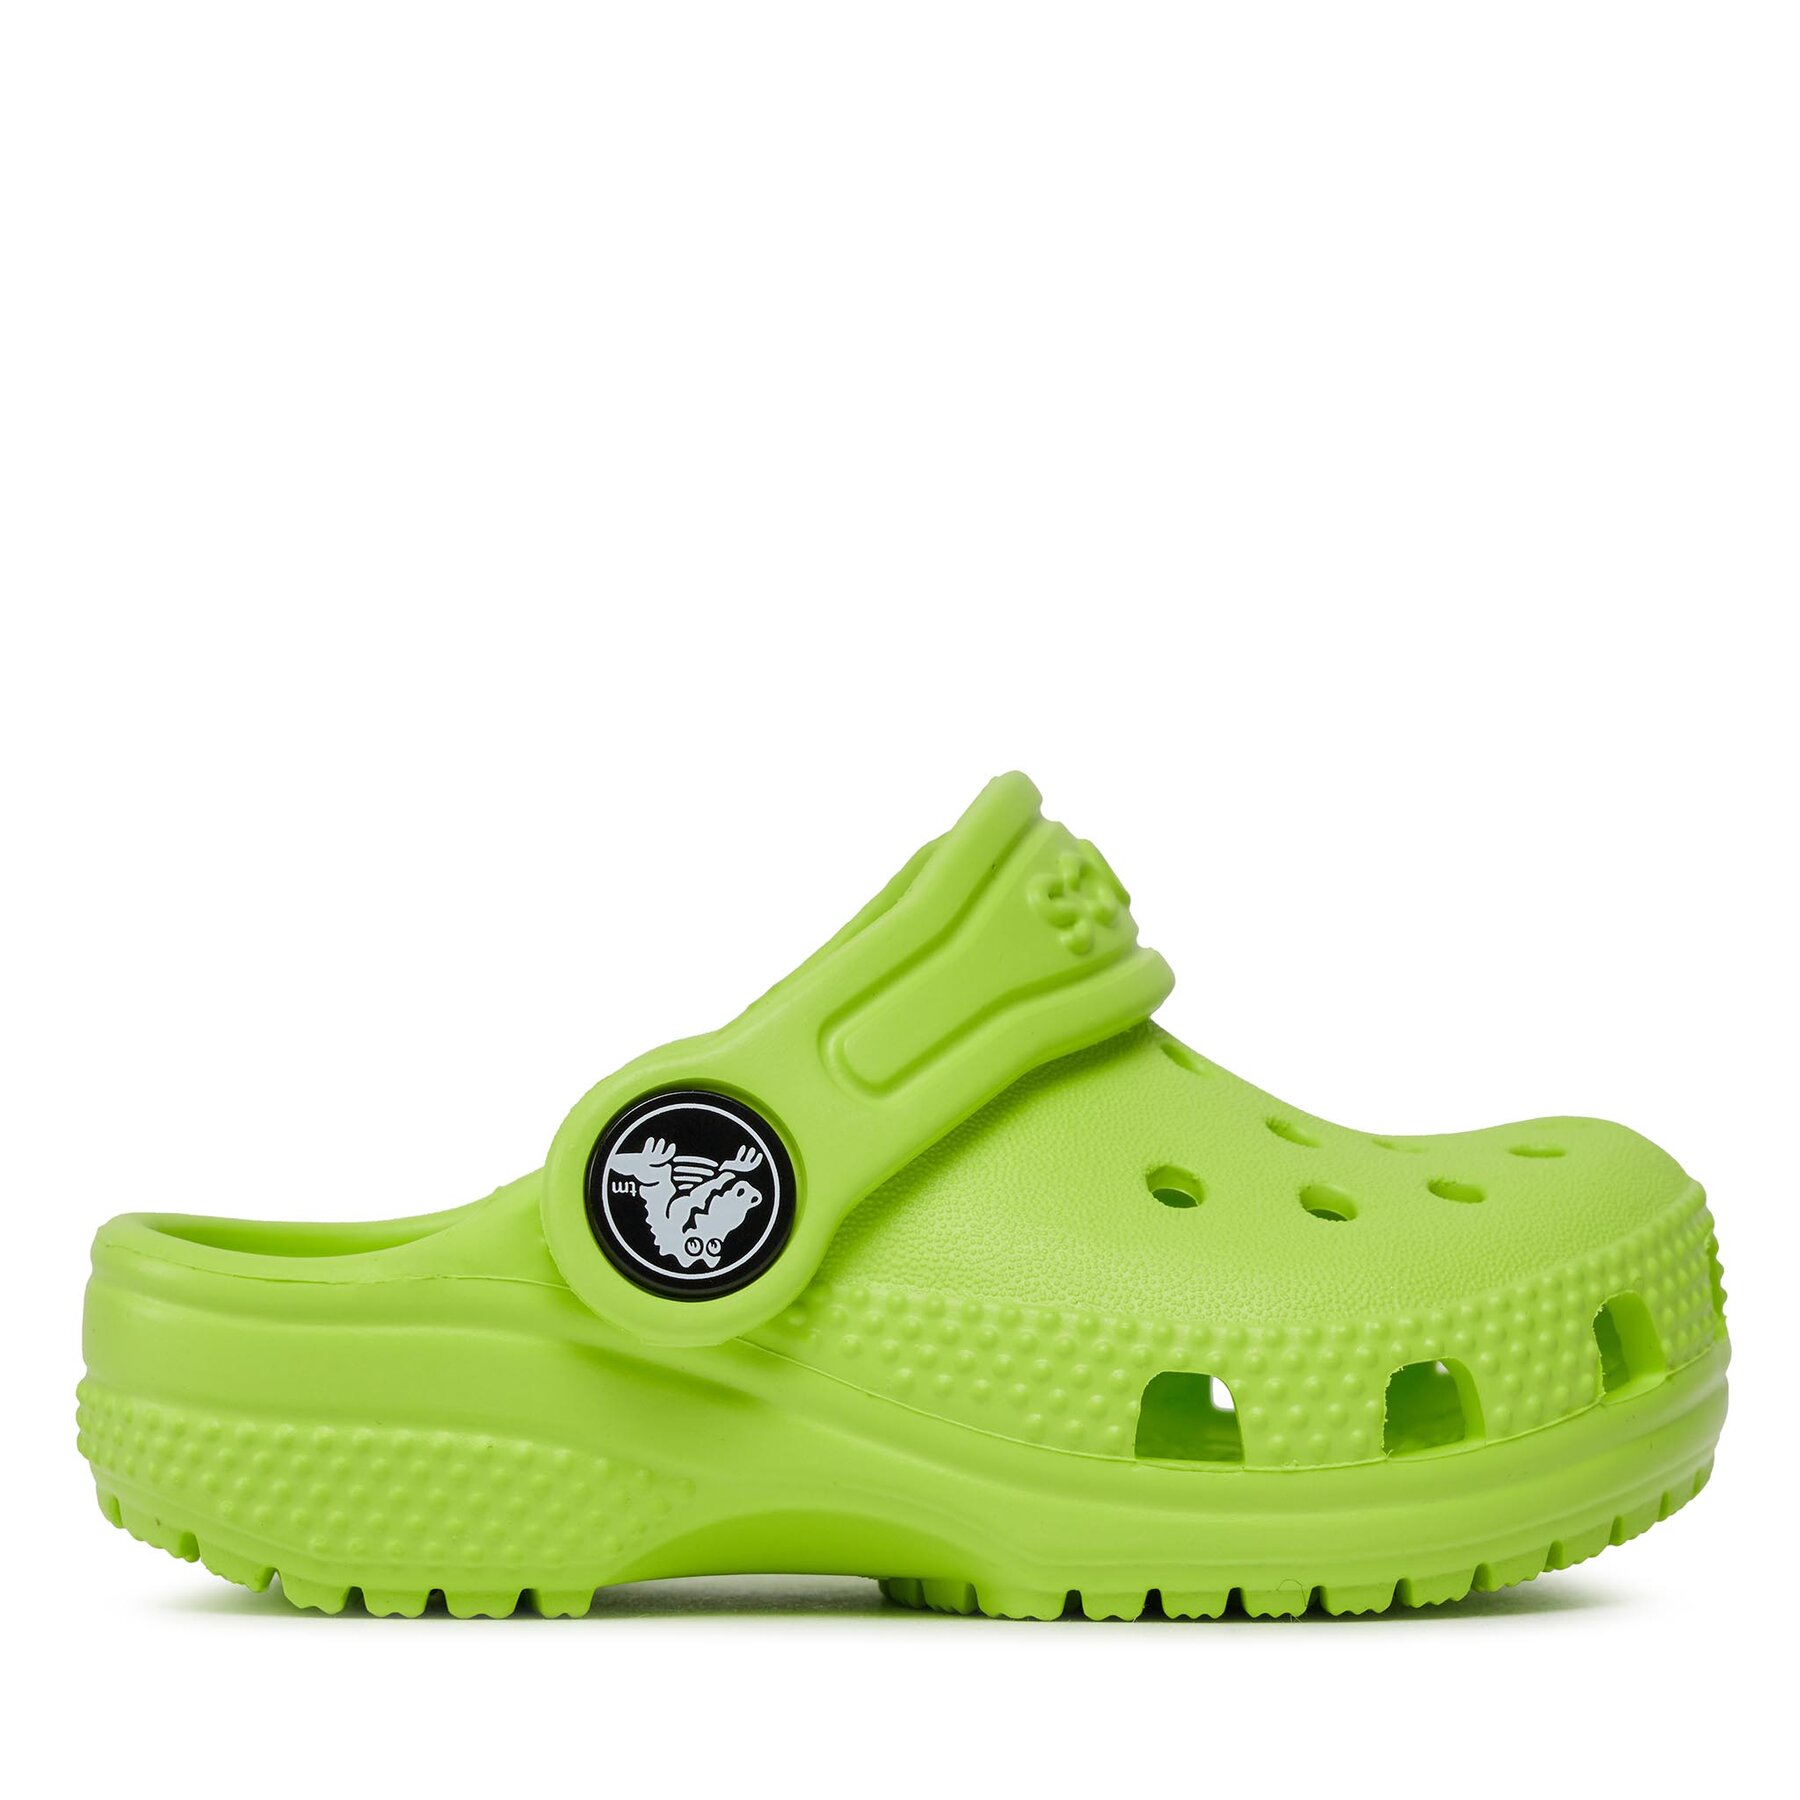 Comprar en oferta Crocs Classic Toddler Clogs (206990) green 3UH